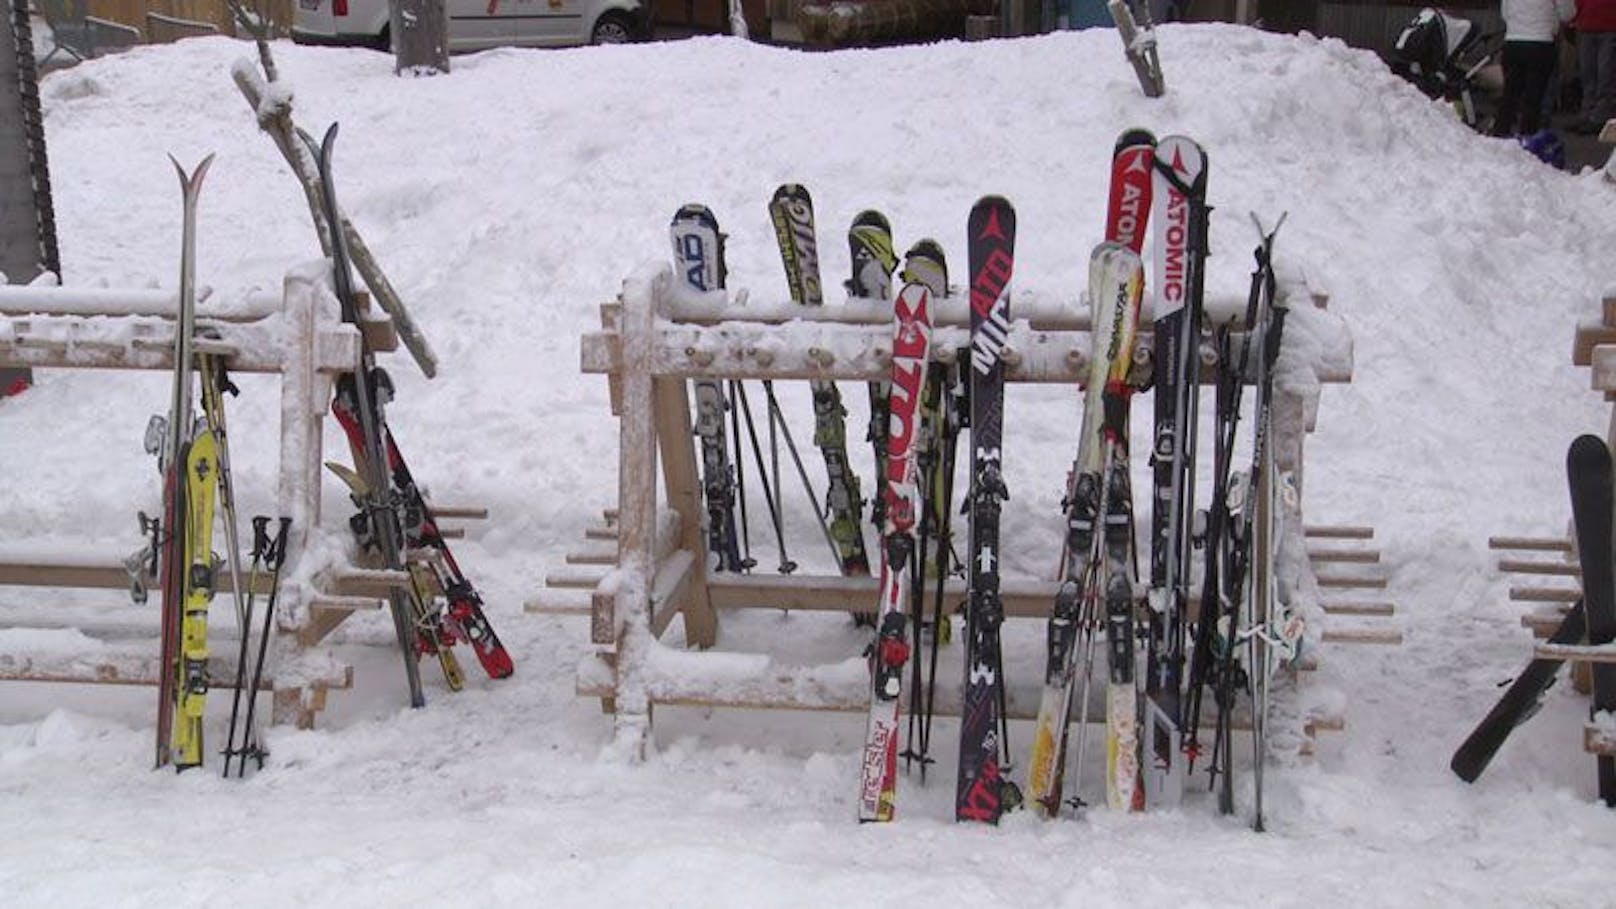 Für 80 Paar geklaute Ski, gab es 20 Monate Haft